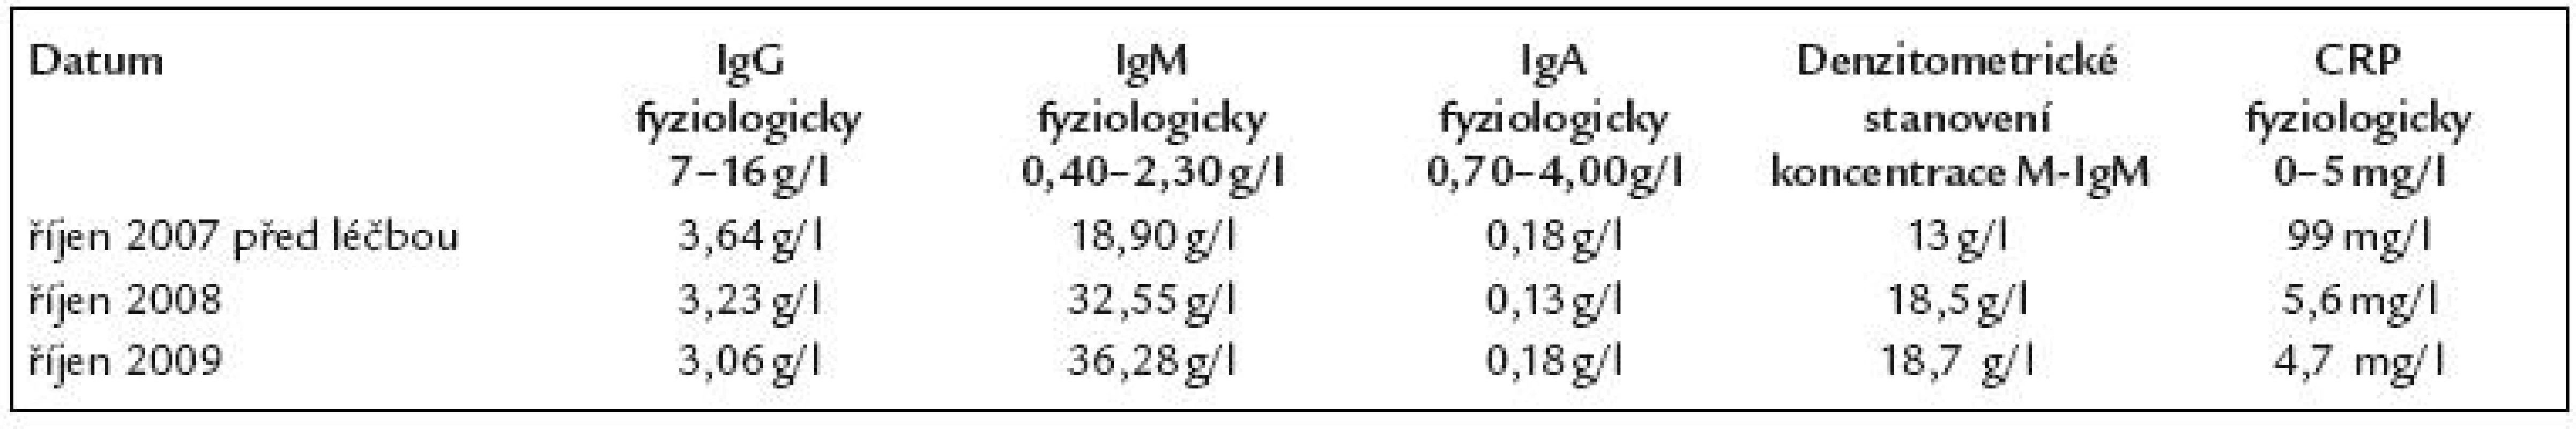 Změny koncentrace polyklonálních imunoglobulinů IgG, IgM a IGA a koncentrace monoklonálního imunoglobulinu typu IgM (M- IgM) stanoveného metodou elektroforézy s denzitometrickým vyhodnocením a hodnoty CRP.